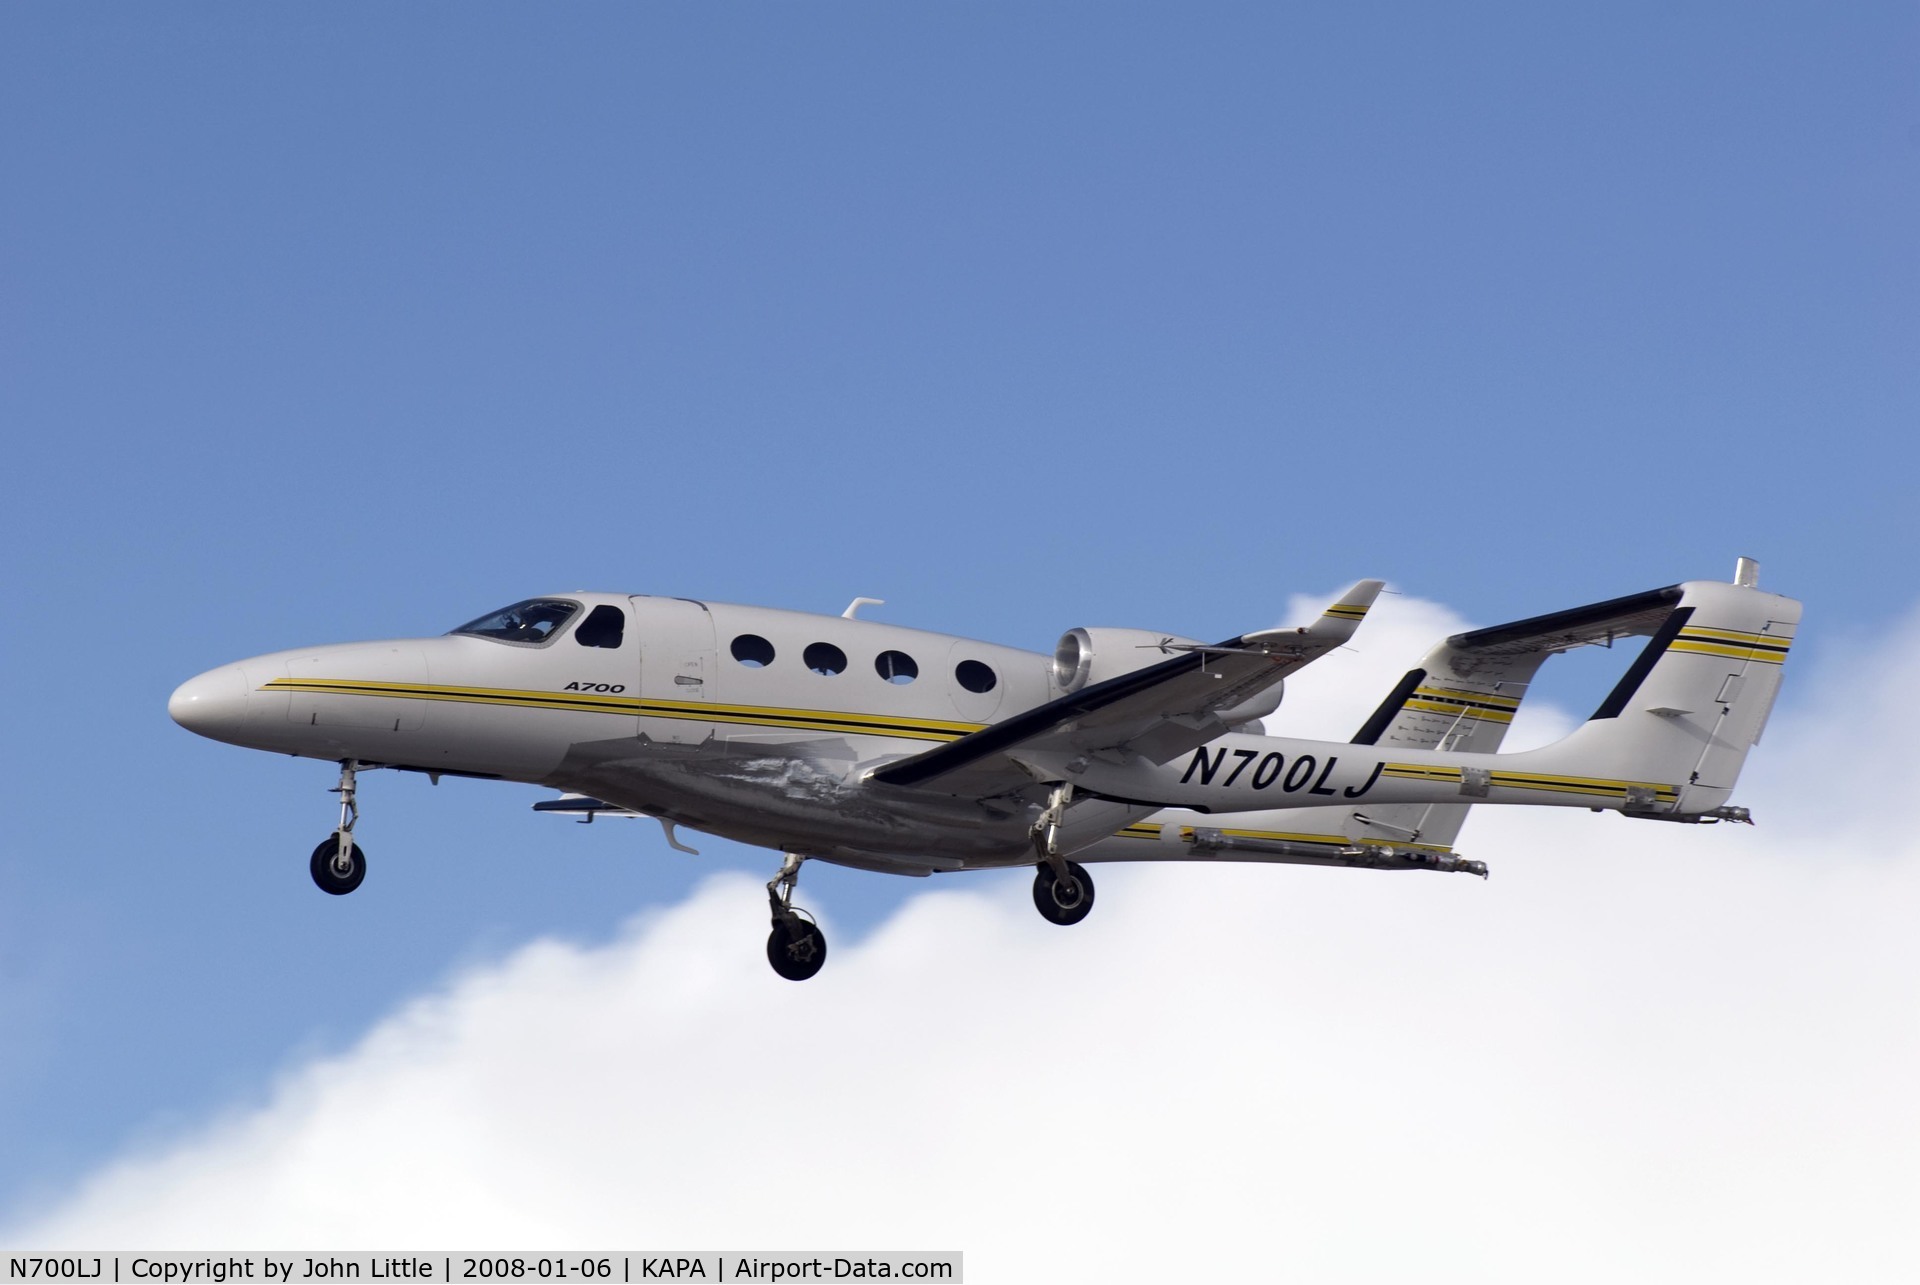 N700LJ, 2006 Adam Aircraft A700 C/N 0002, Approach to 17L